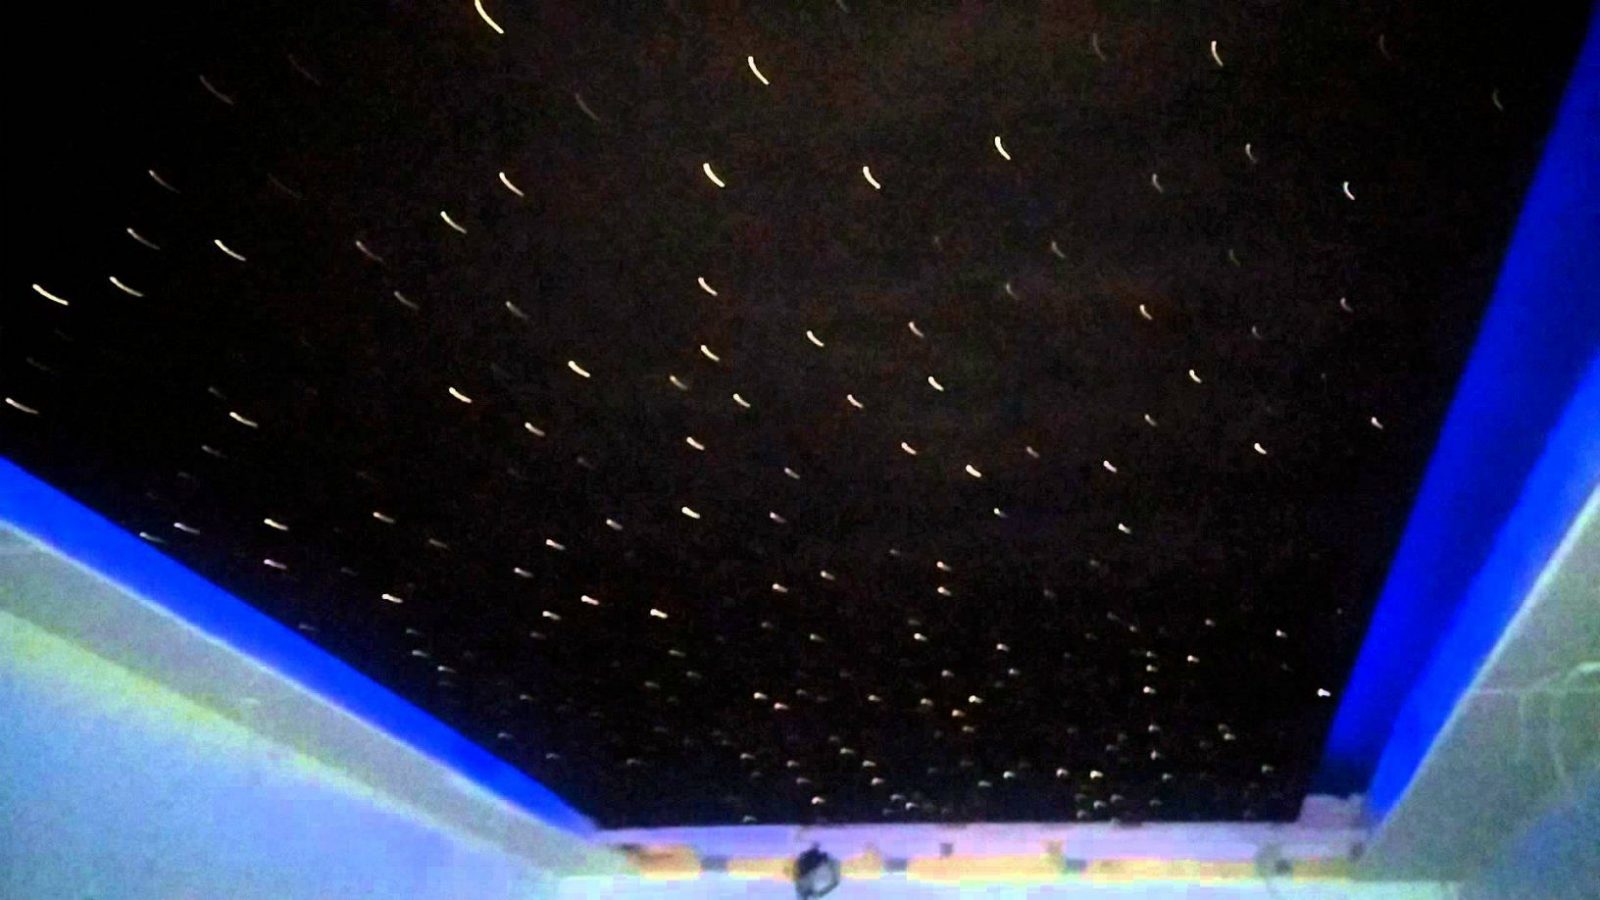 Sternenhimmel Mit Sternschnuppe Im Heimkino (Glasfaser)  Youtube von Sternenhimmel Selber Bauen Glasfaser Bild